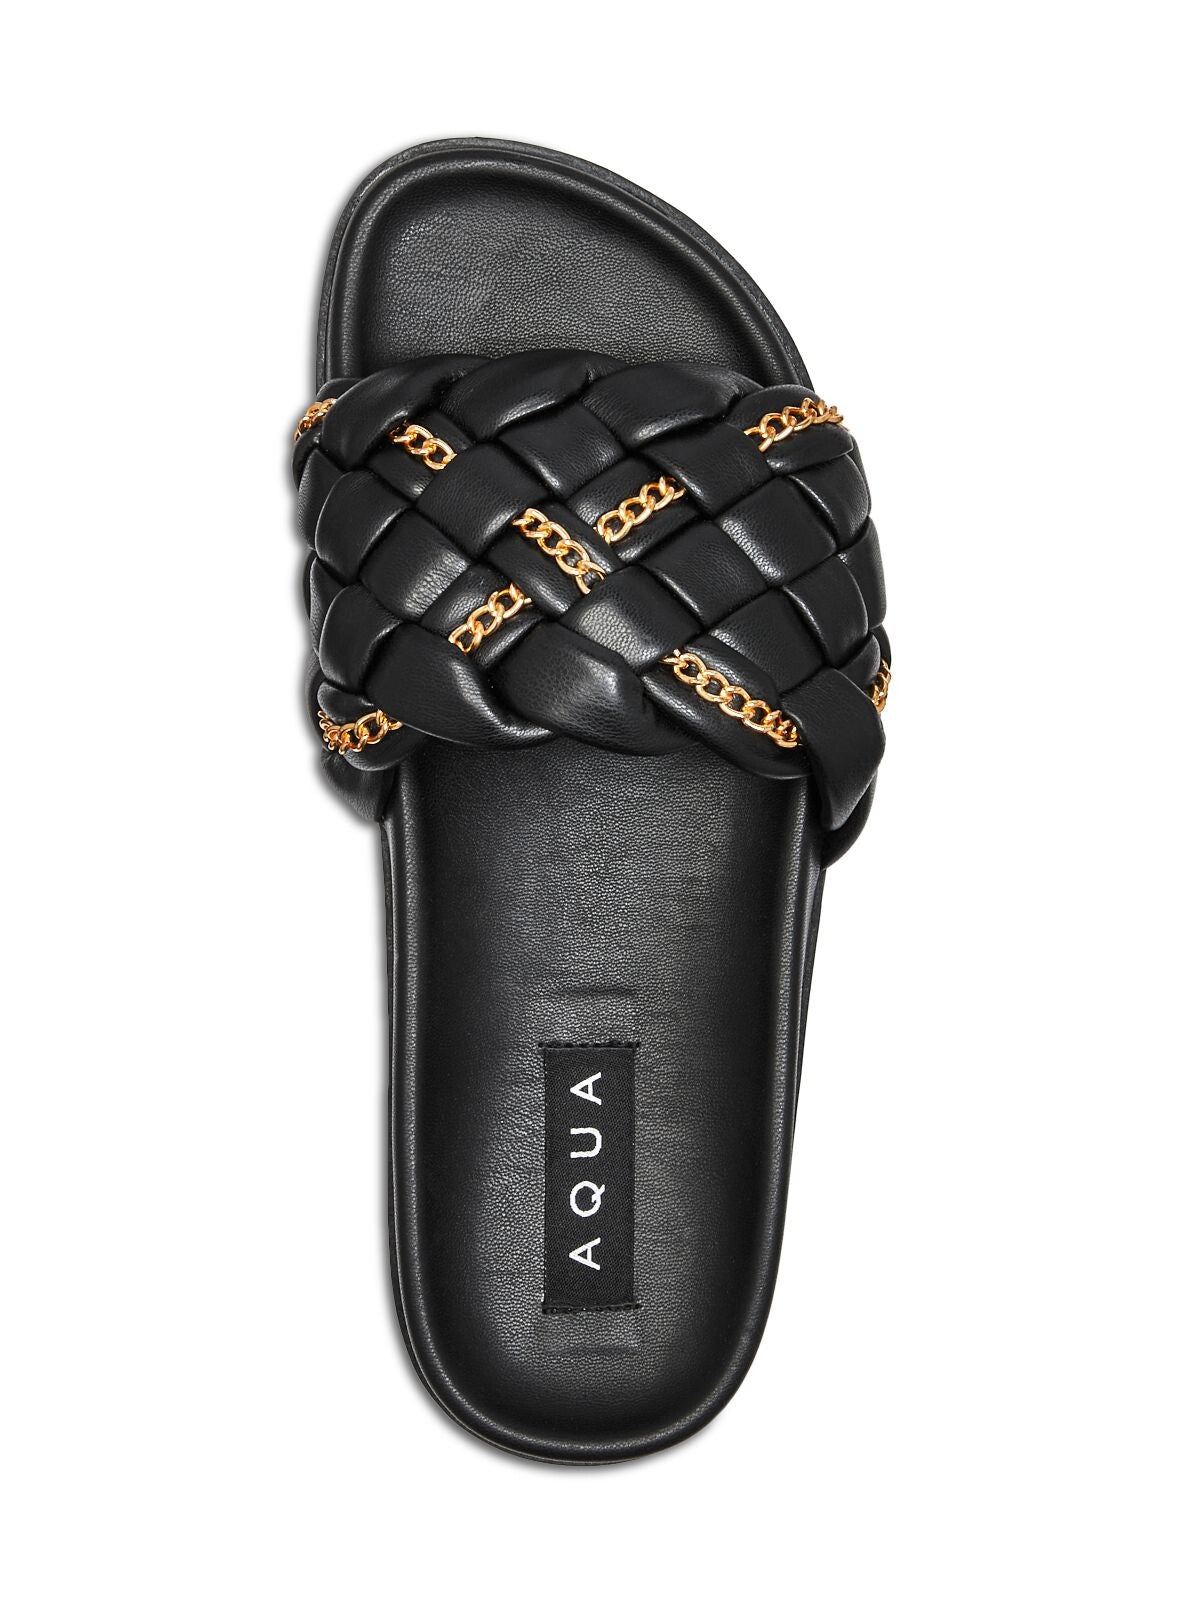 AQUA Womens Black Chain Woven Sofia Round Toe Platform Slip On Slide Sandals Shoes